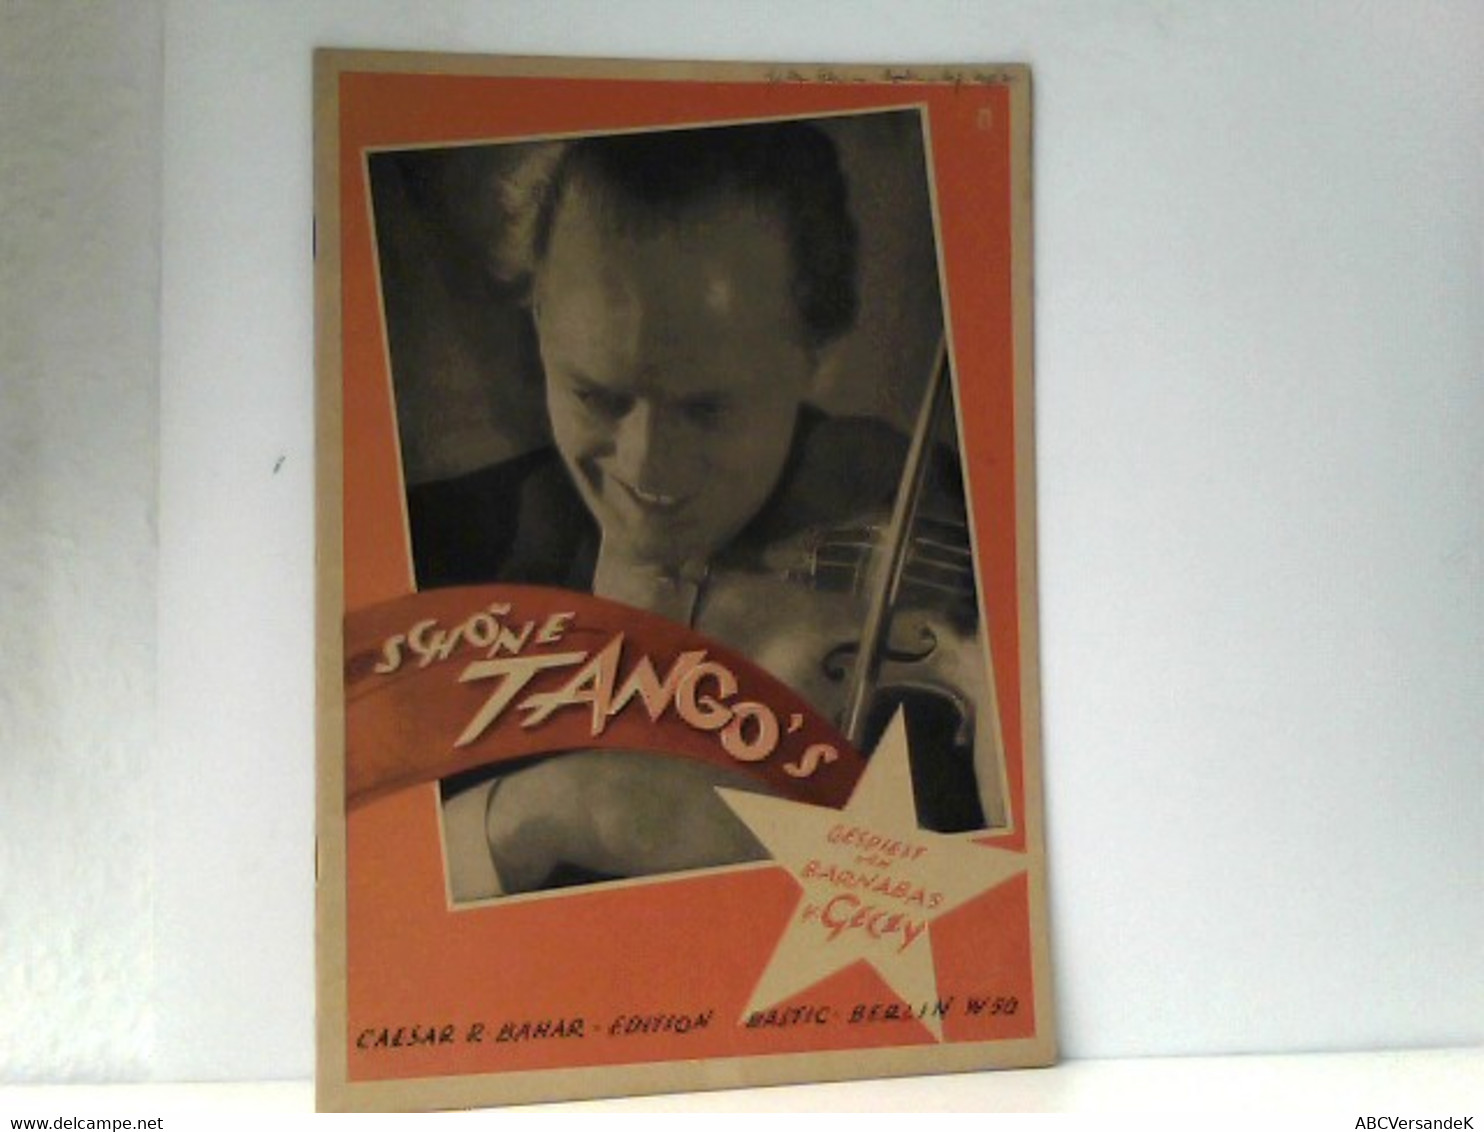 Schöne Tango S (Tangos); Gespielt Von Barnabas V. Geczy - Other Book Accessories